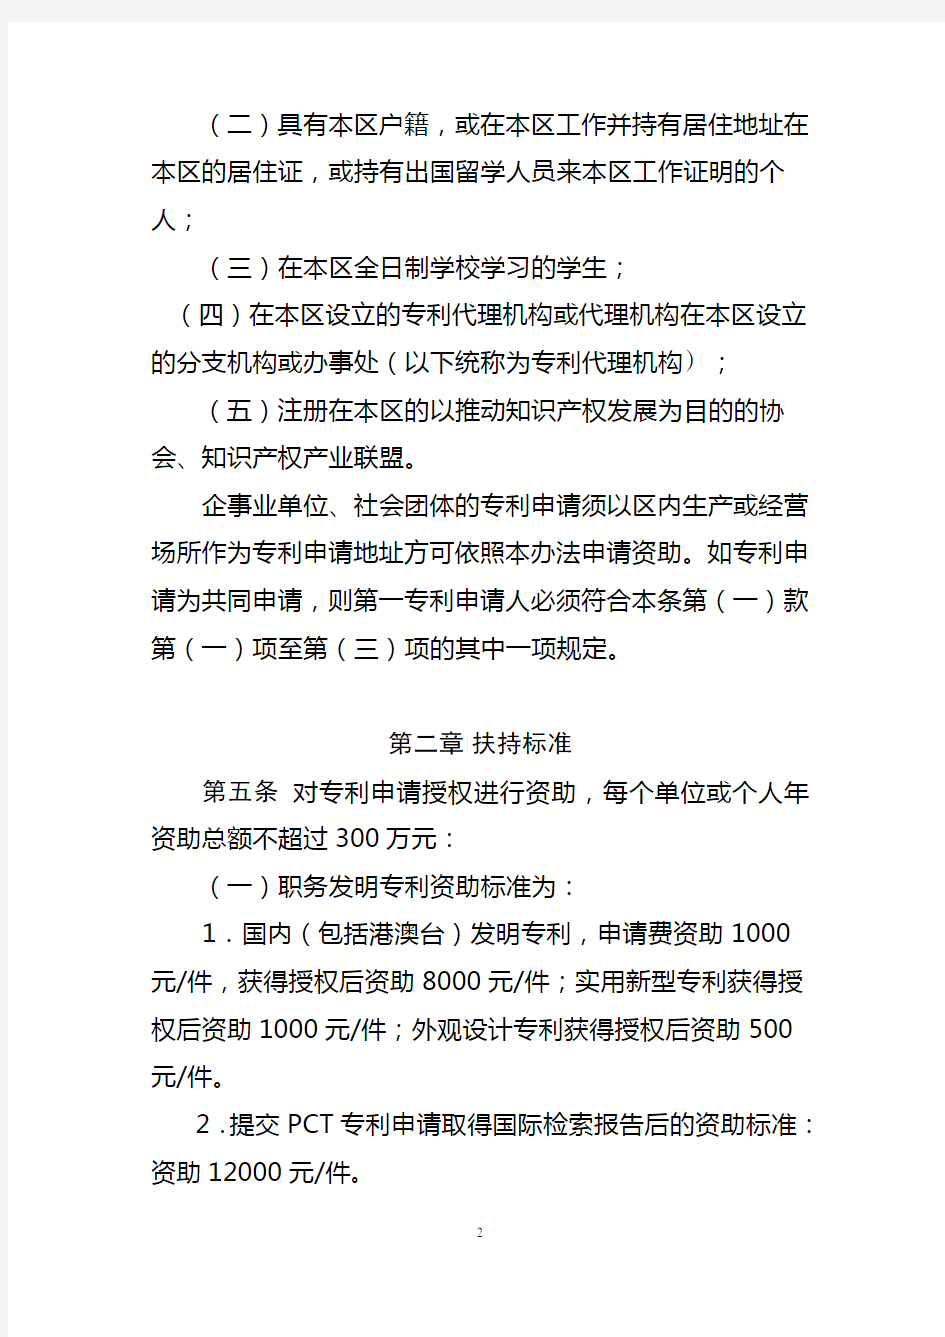 2017-广州市南沙区促进专利创造和运用扶持办法(征求意见稿)